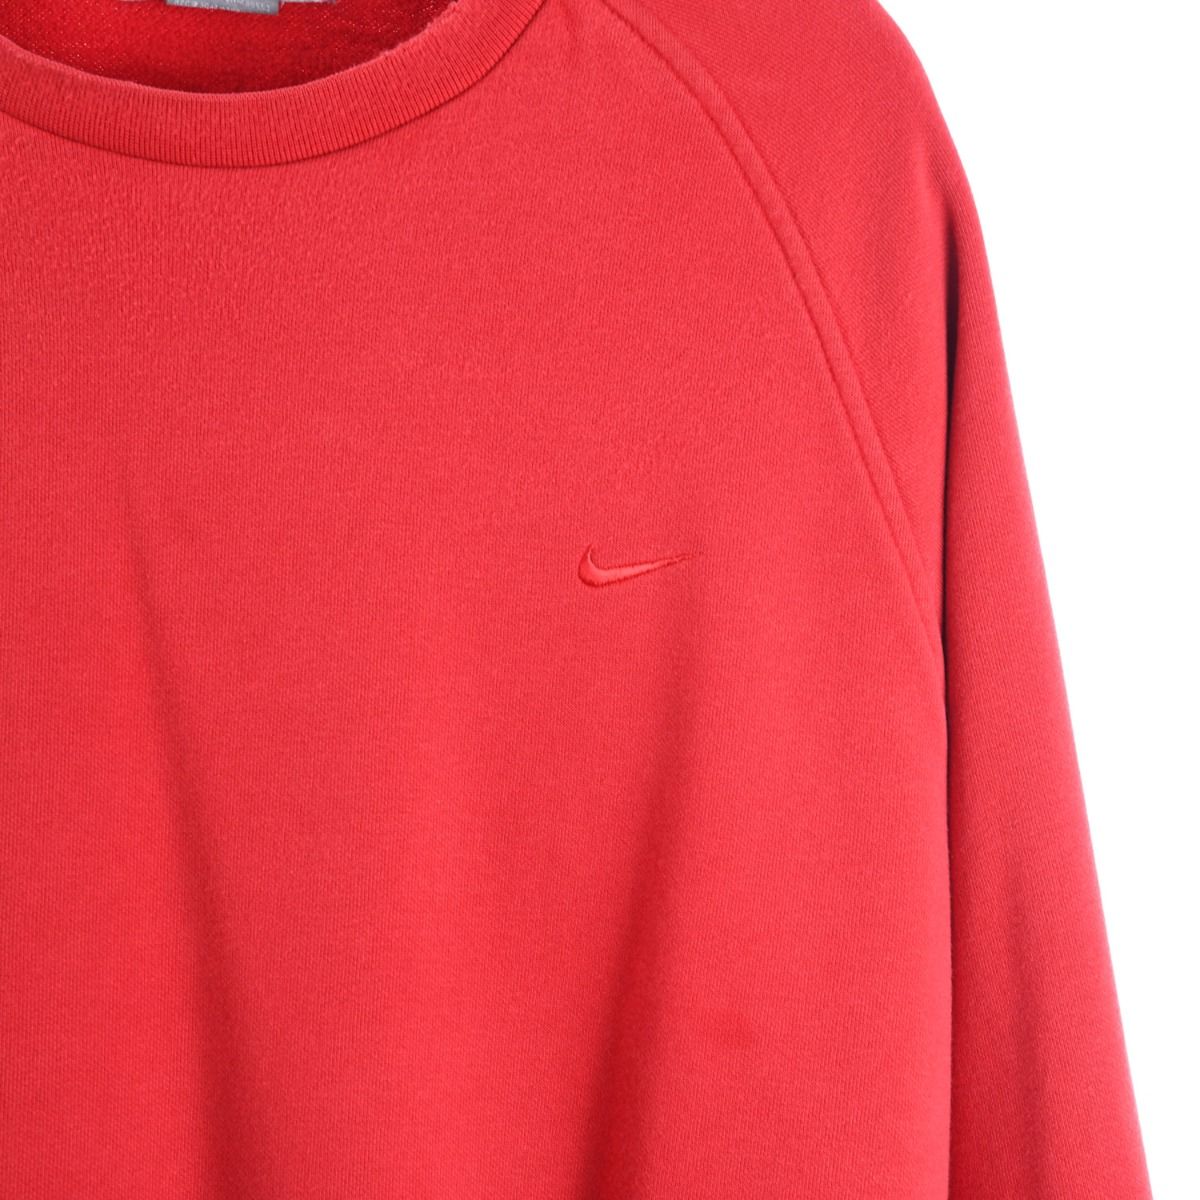 Nike Early 2000s Sweatshirt 